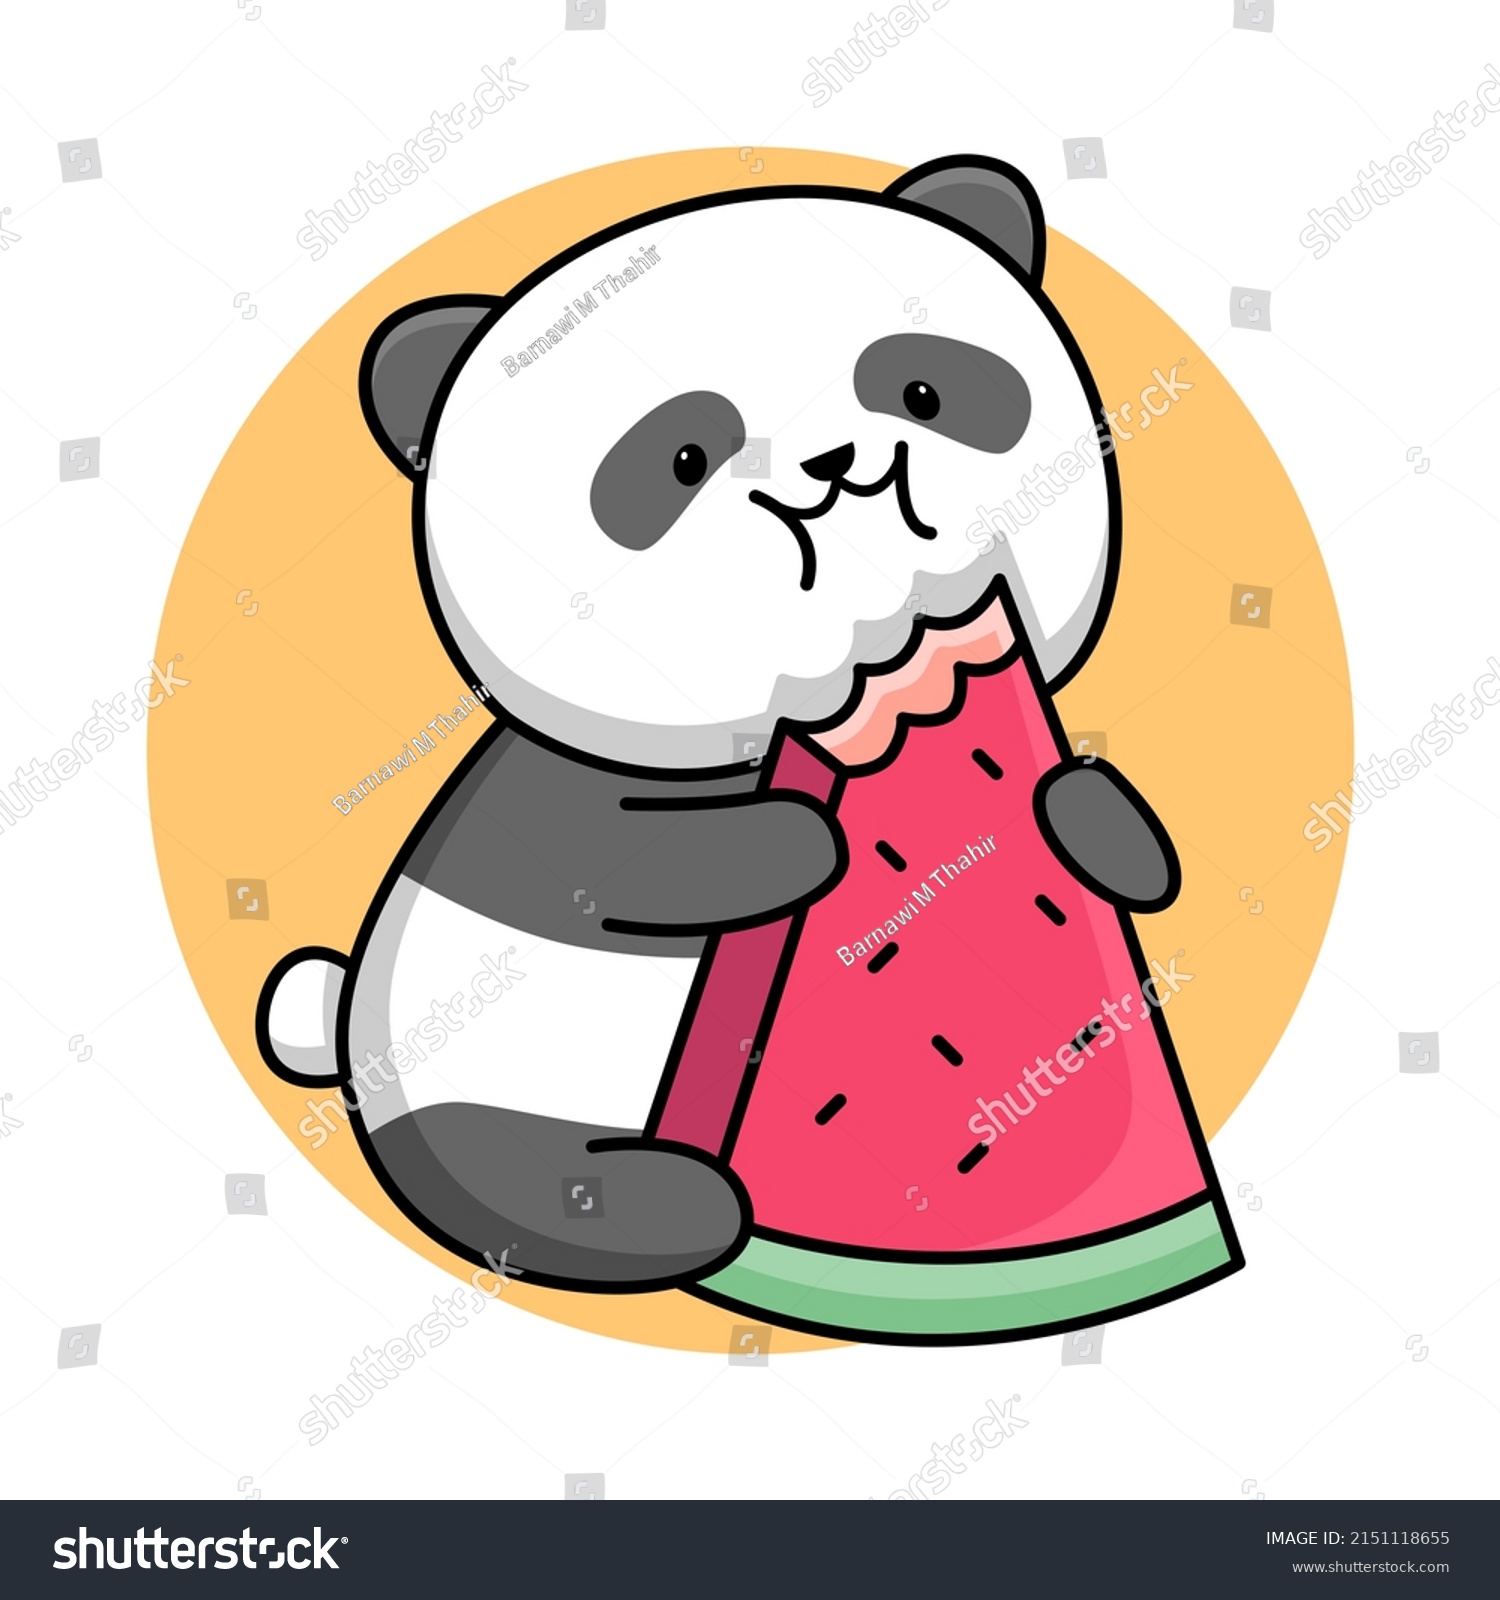 Cute Panda Eating Watermelon Cartoon Design Stock Vector Royalty Free